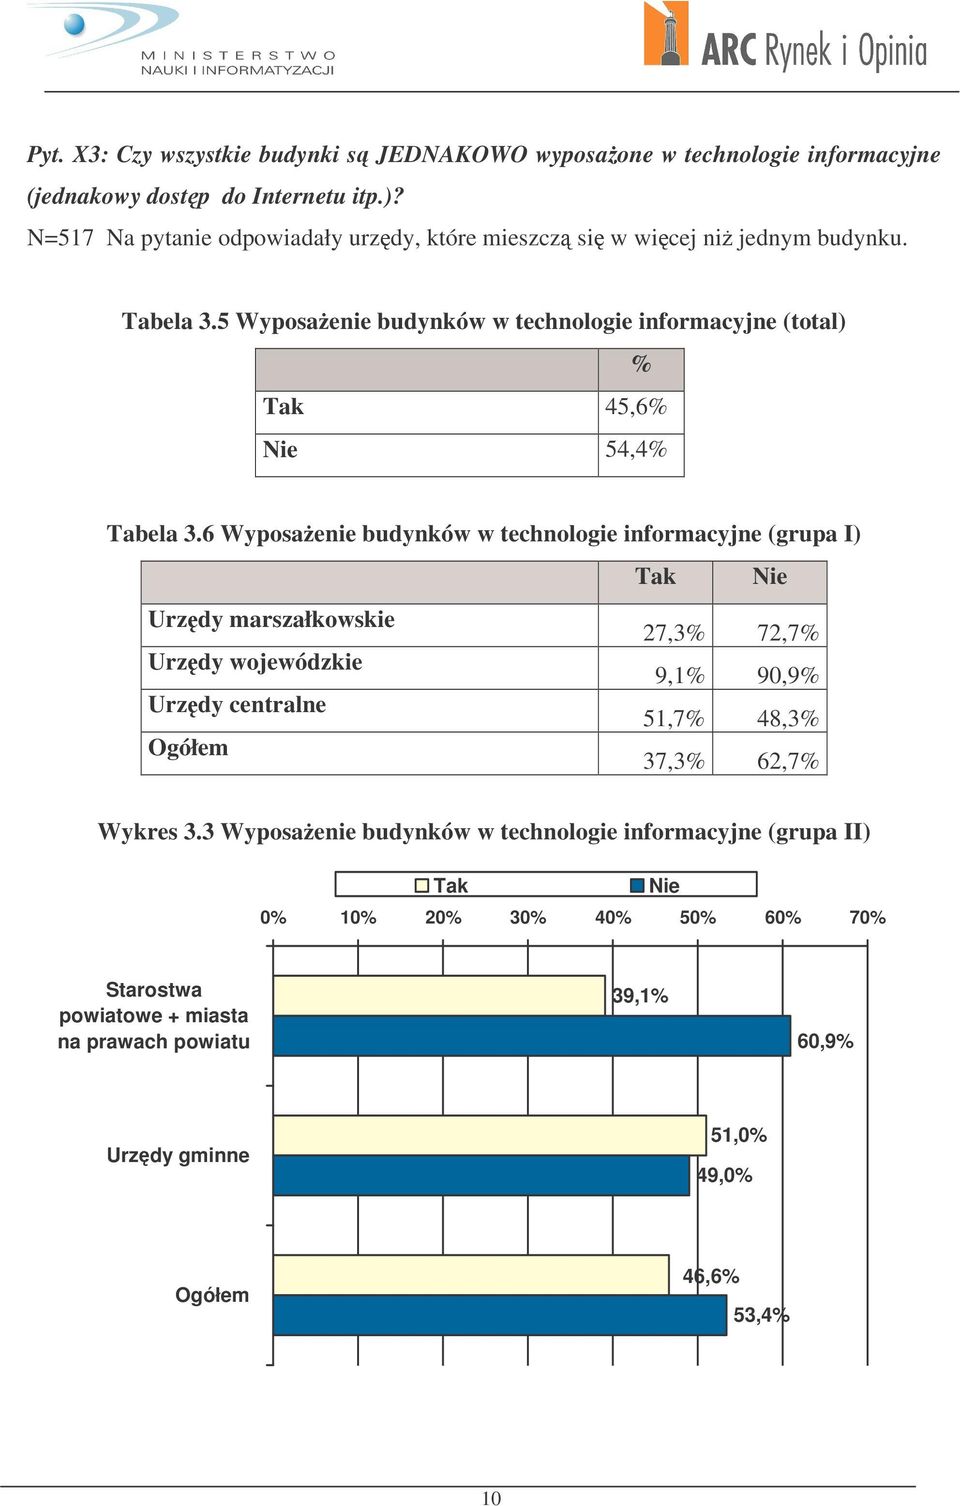 5 Wyposaenie budynków w technologie informacyjne (total) % Tak 45,6% Nie 54,4% Tabela 3.